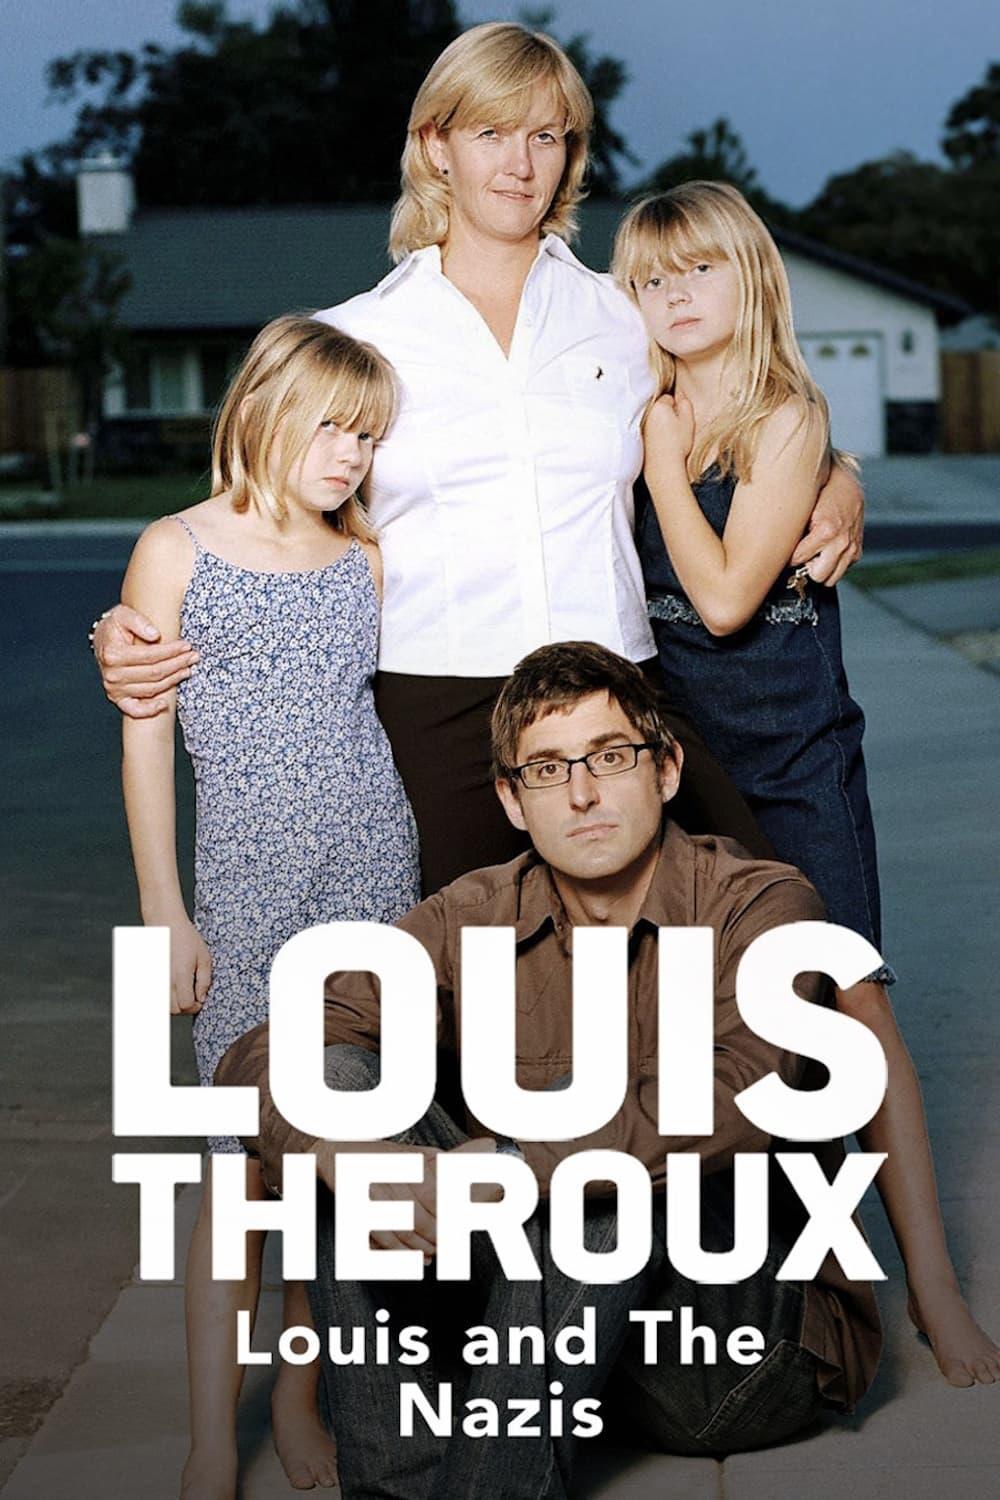 Louis Theroux: Gambling in Las Vegas poster